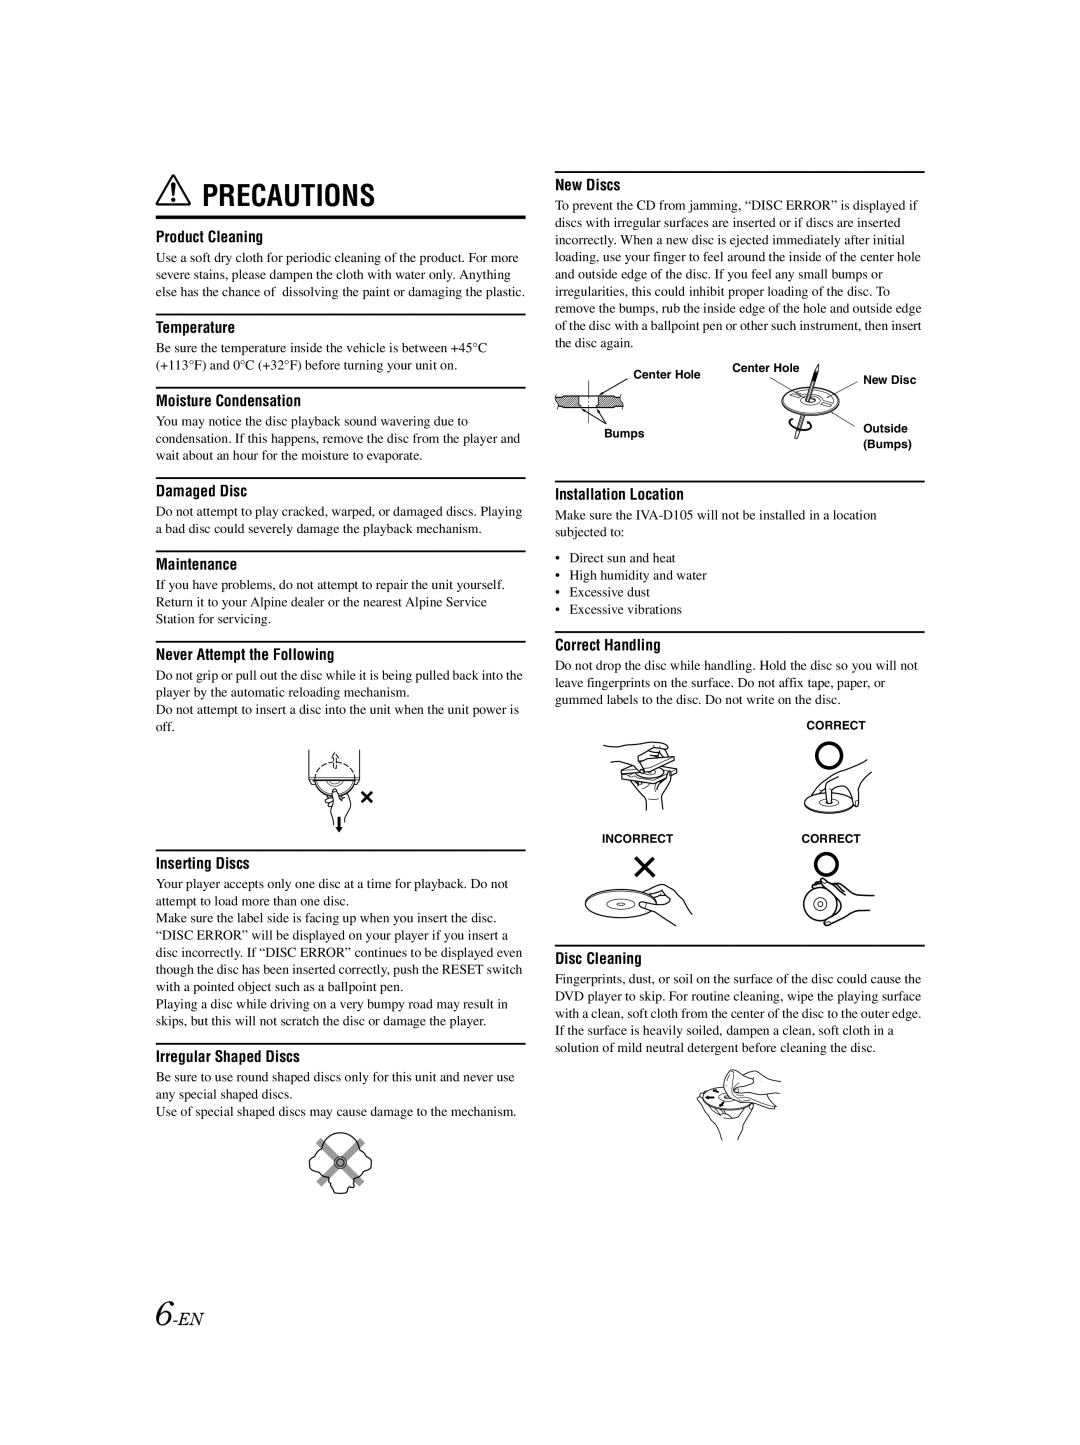 Alpine IVA-D105 owner manual Precautions 